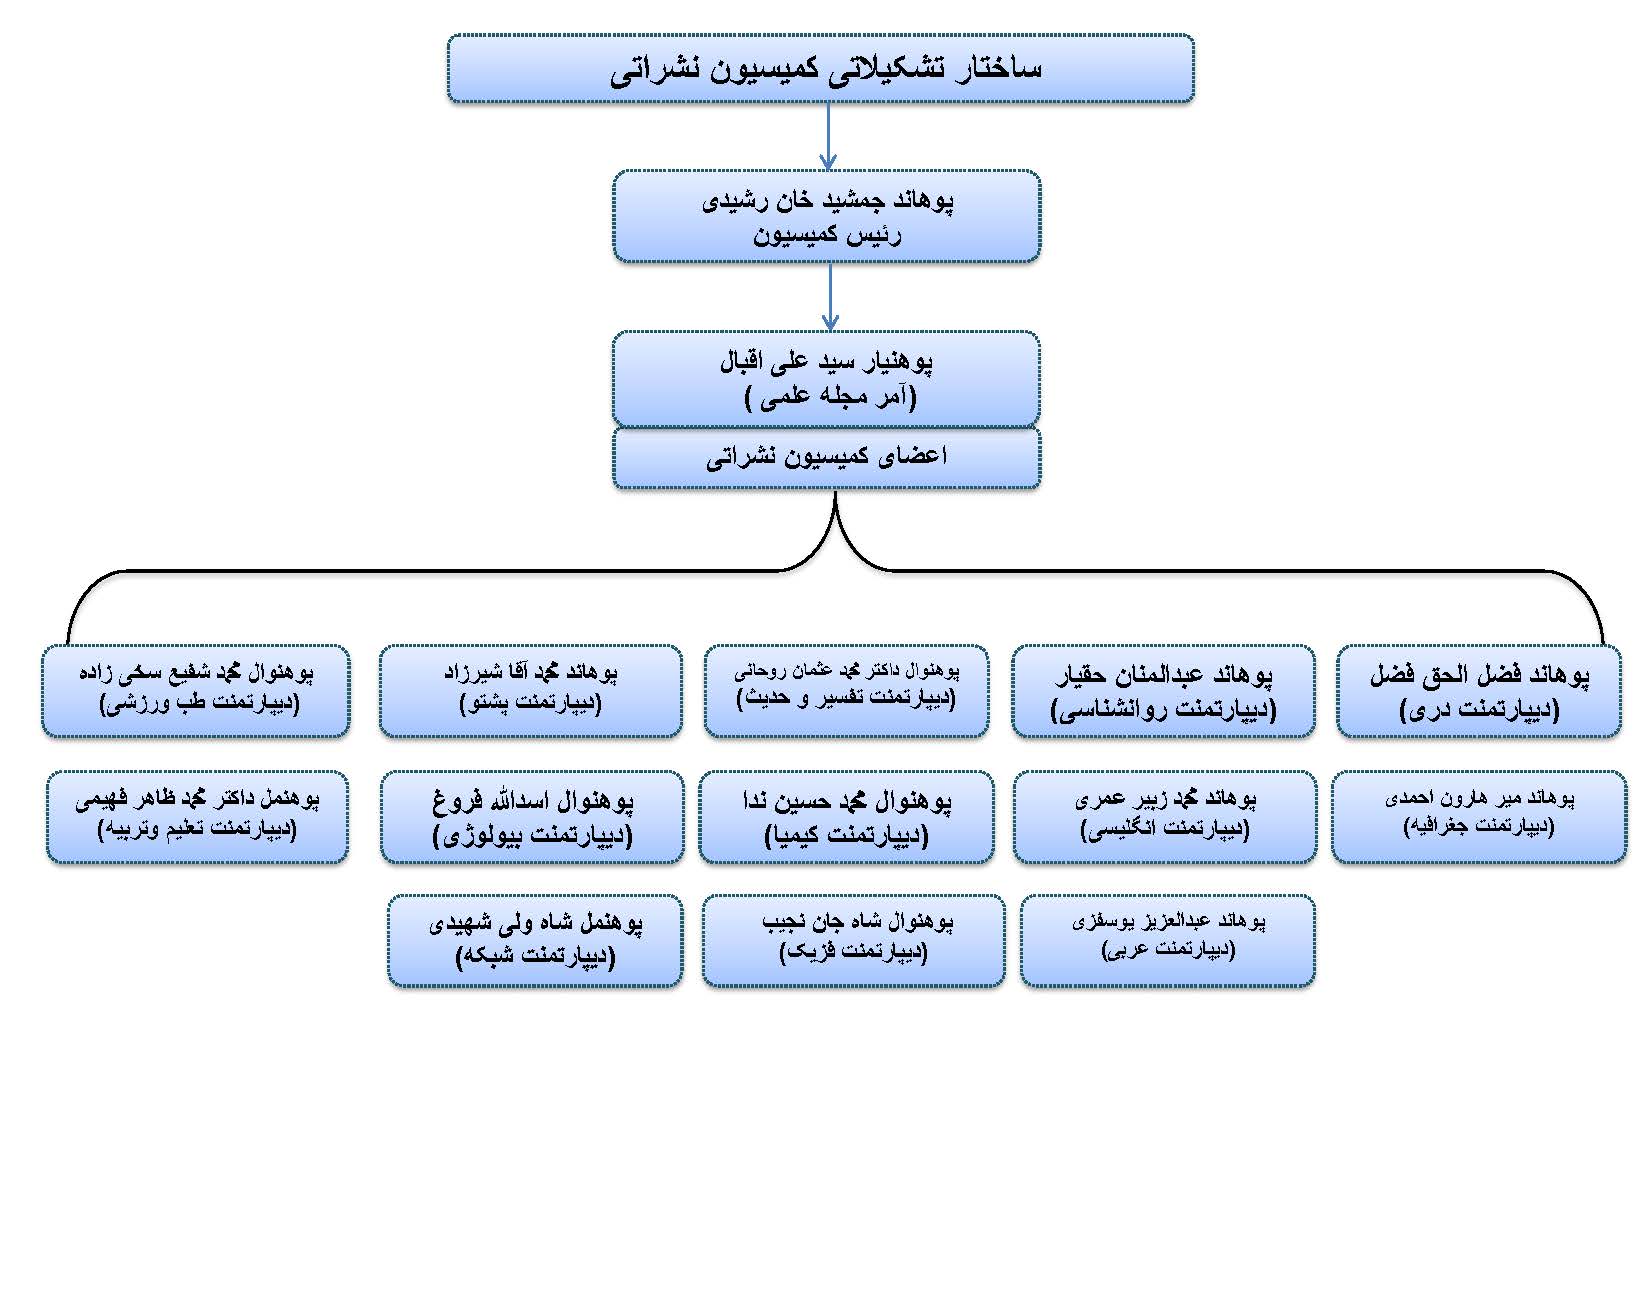 ساختار تشکیلات کمیسون نشرات